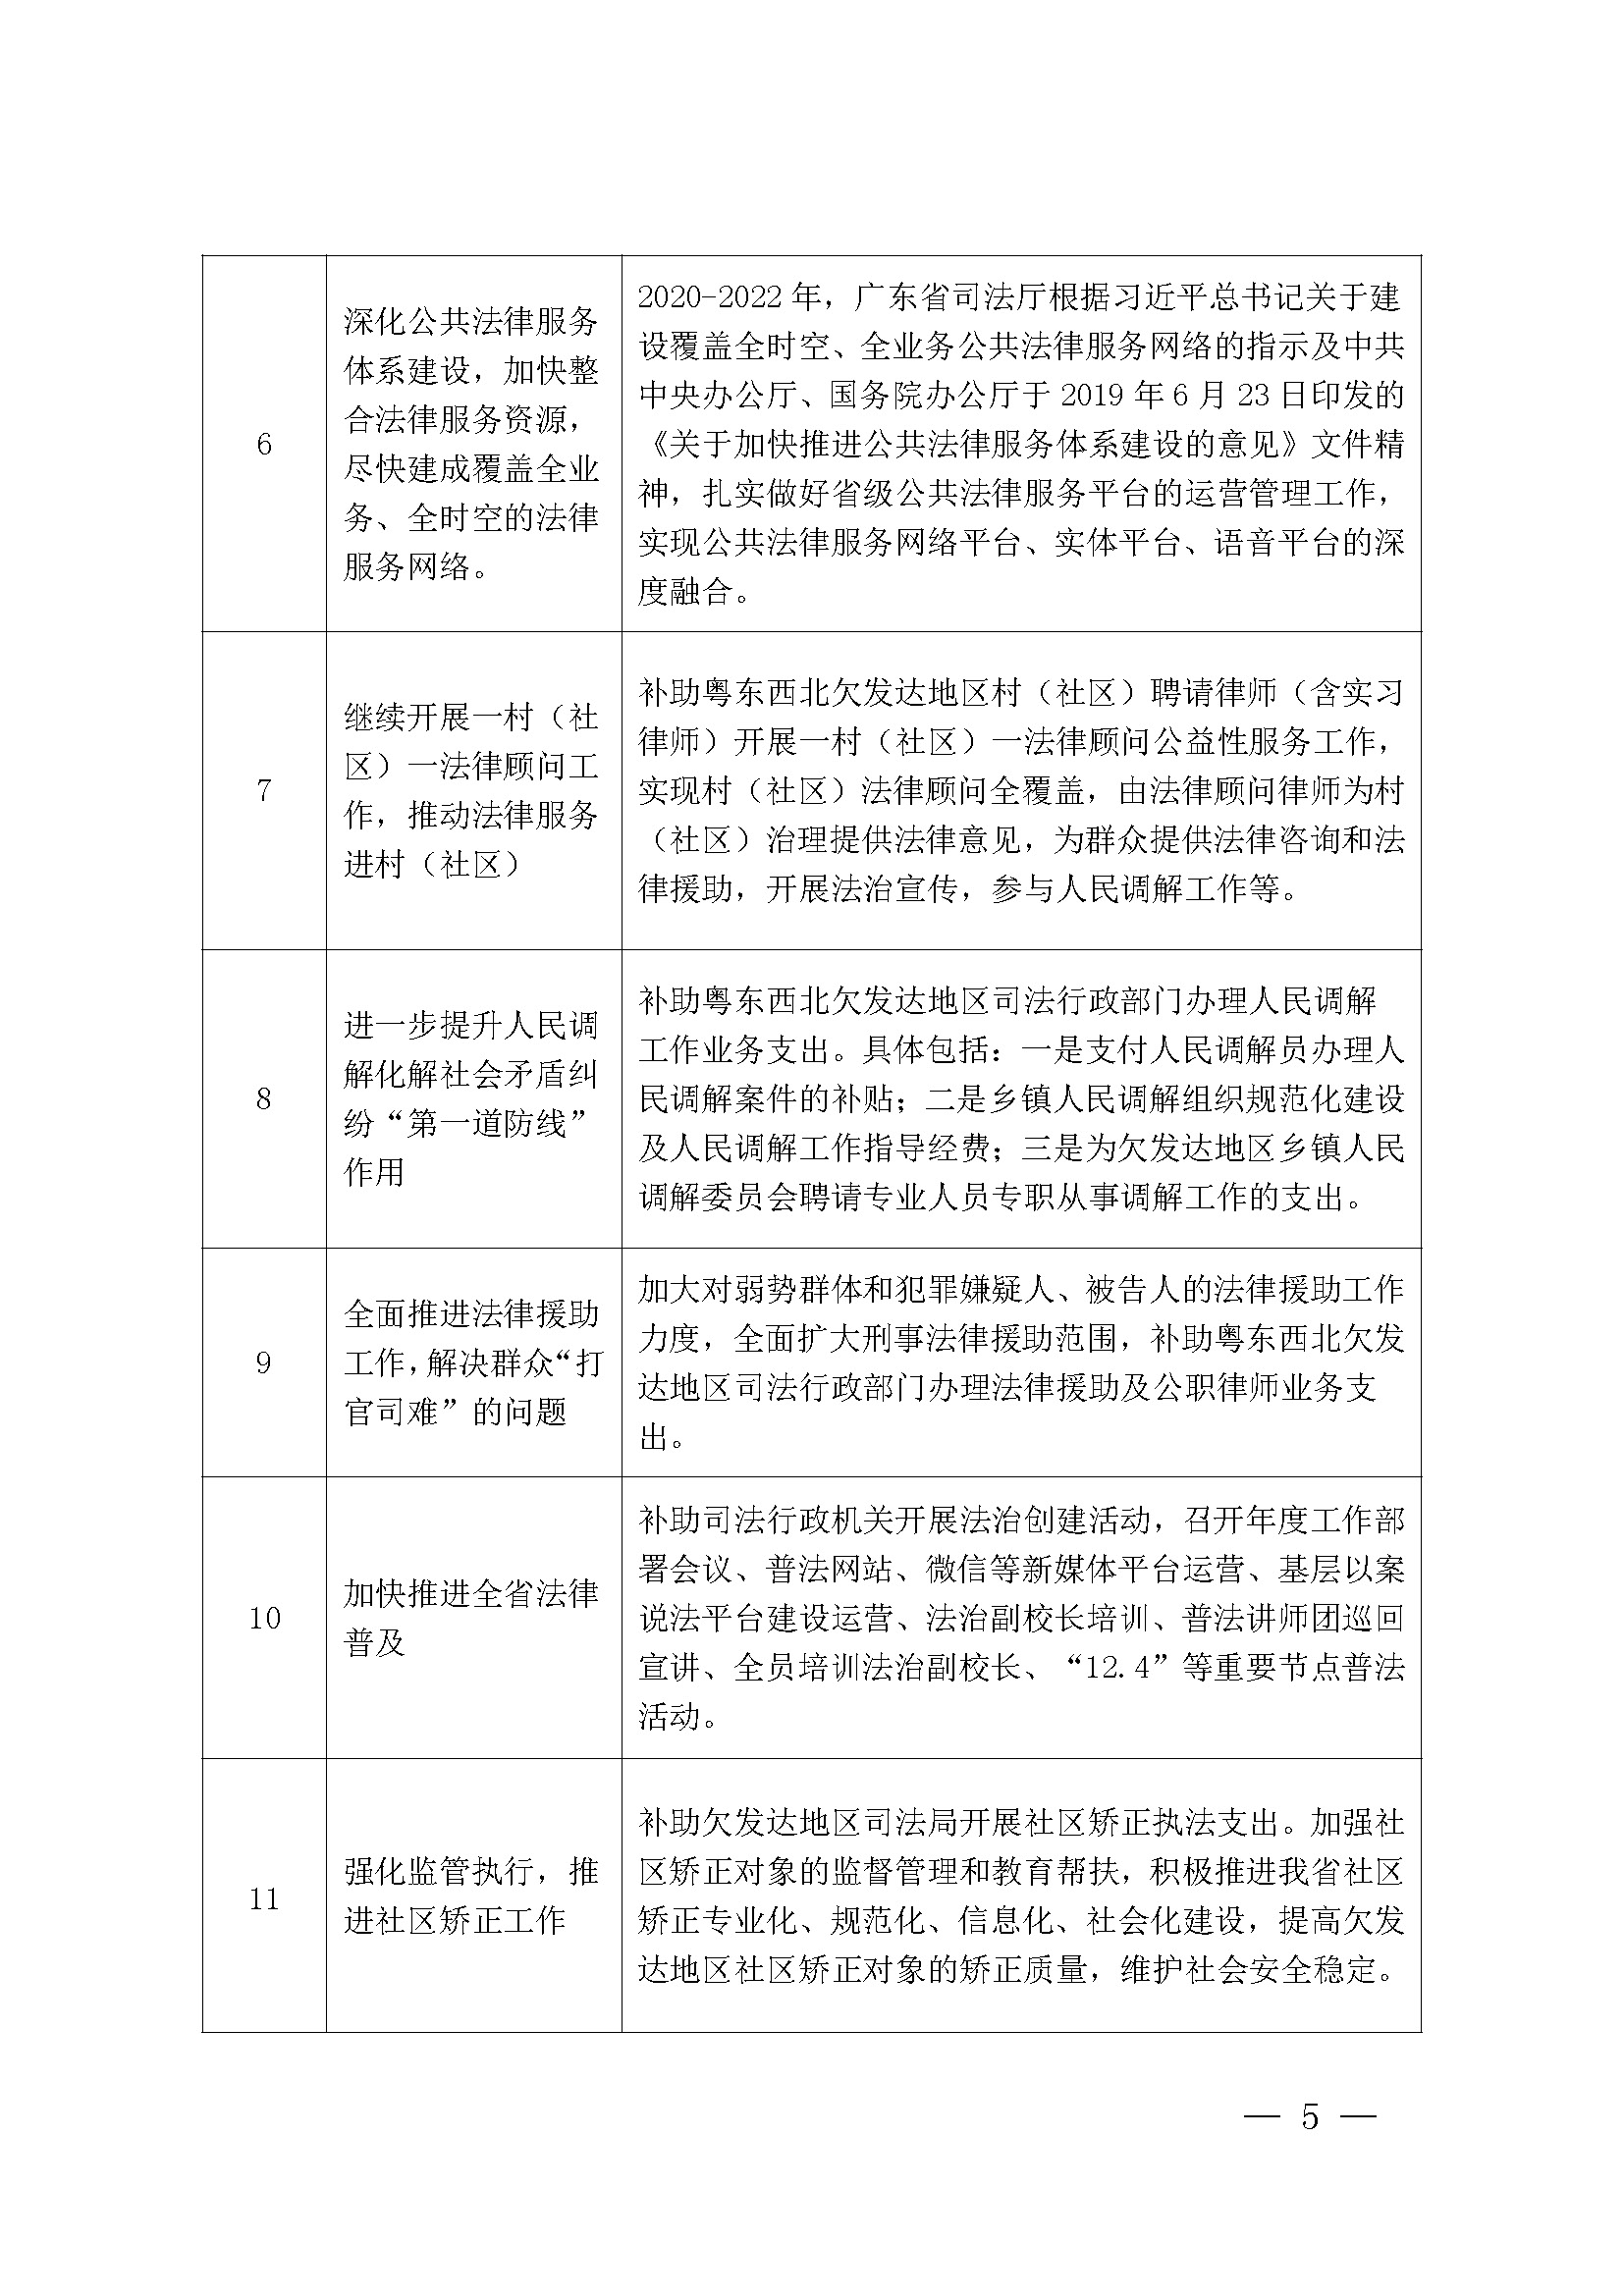 广东省司法厅2022年度部门整体支出绩效自评报告_页面_05.jpg